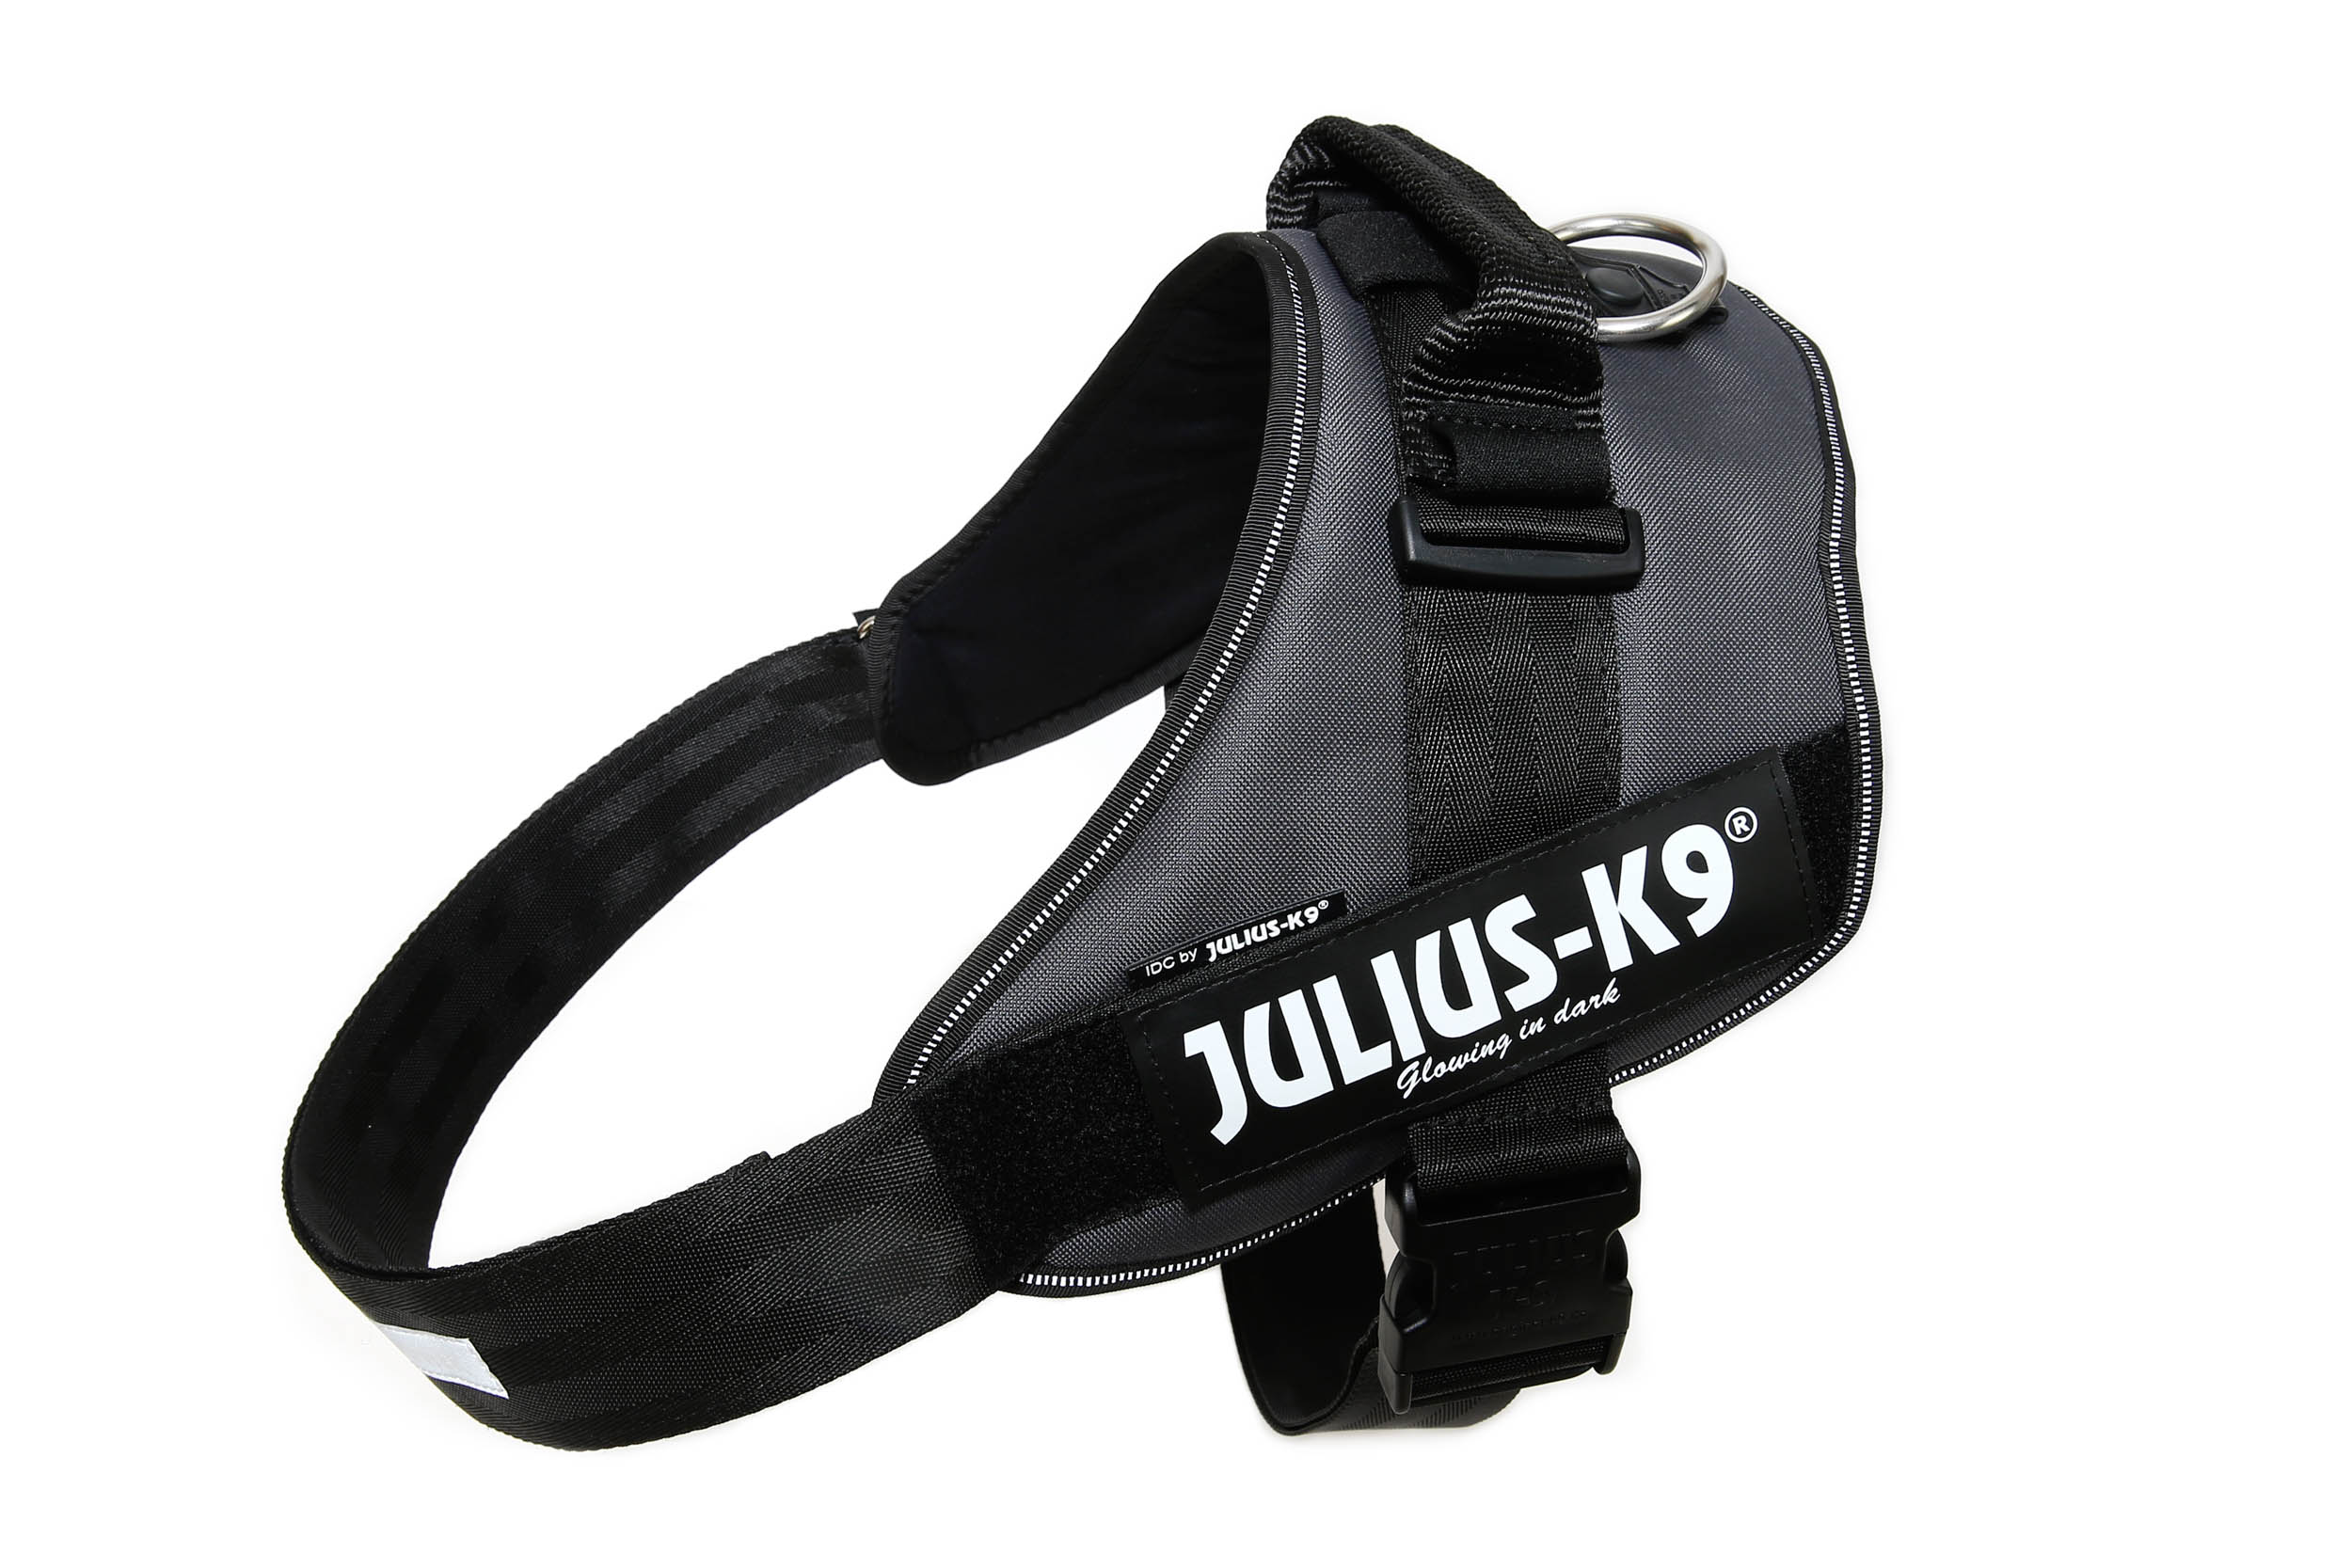 Afbeelding Julius k9 idc power-harnas voor hond / tuig voor voor labels antraciet Maat 4/96-138cm door K-9 Security dogs